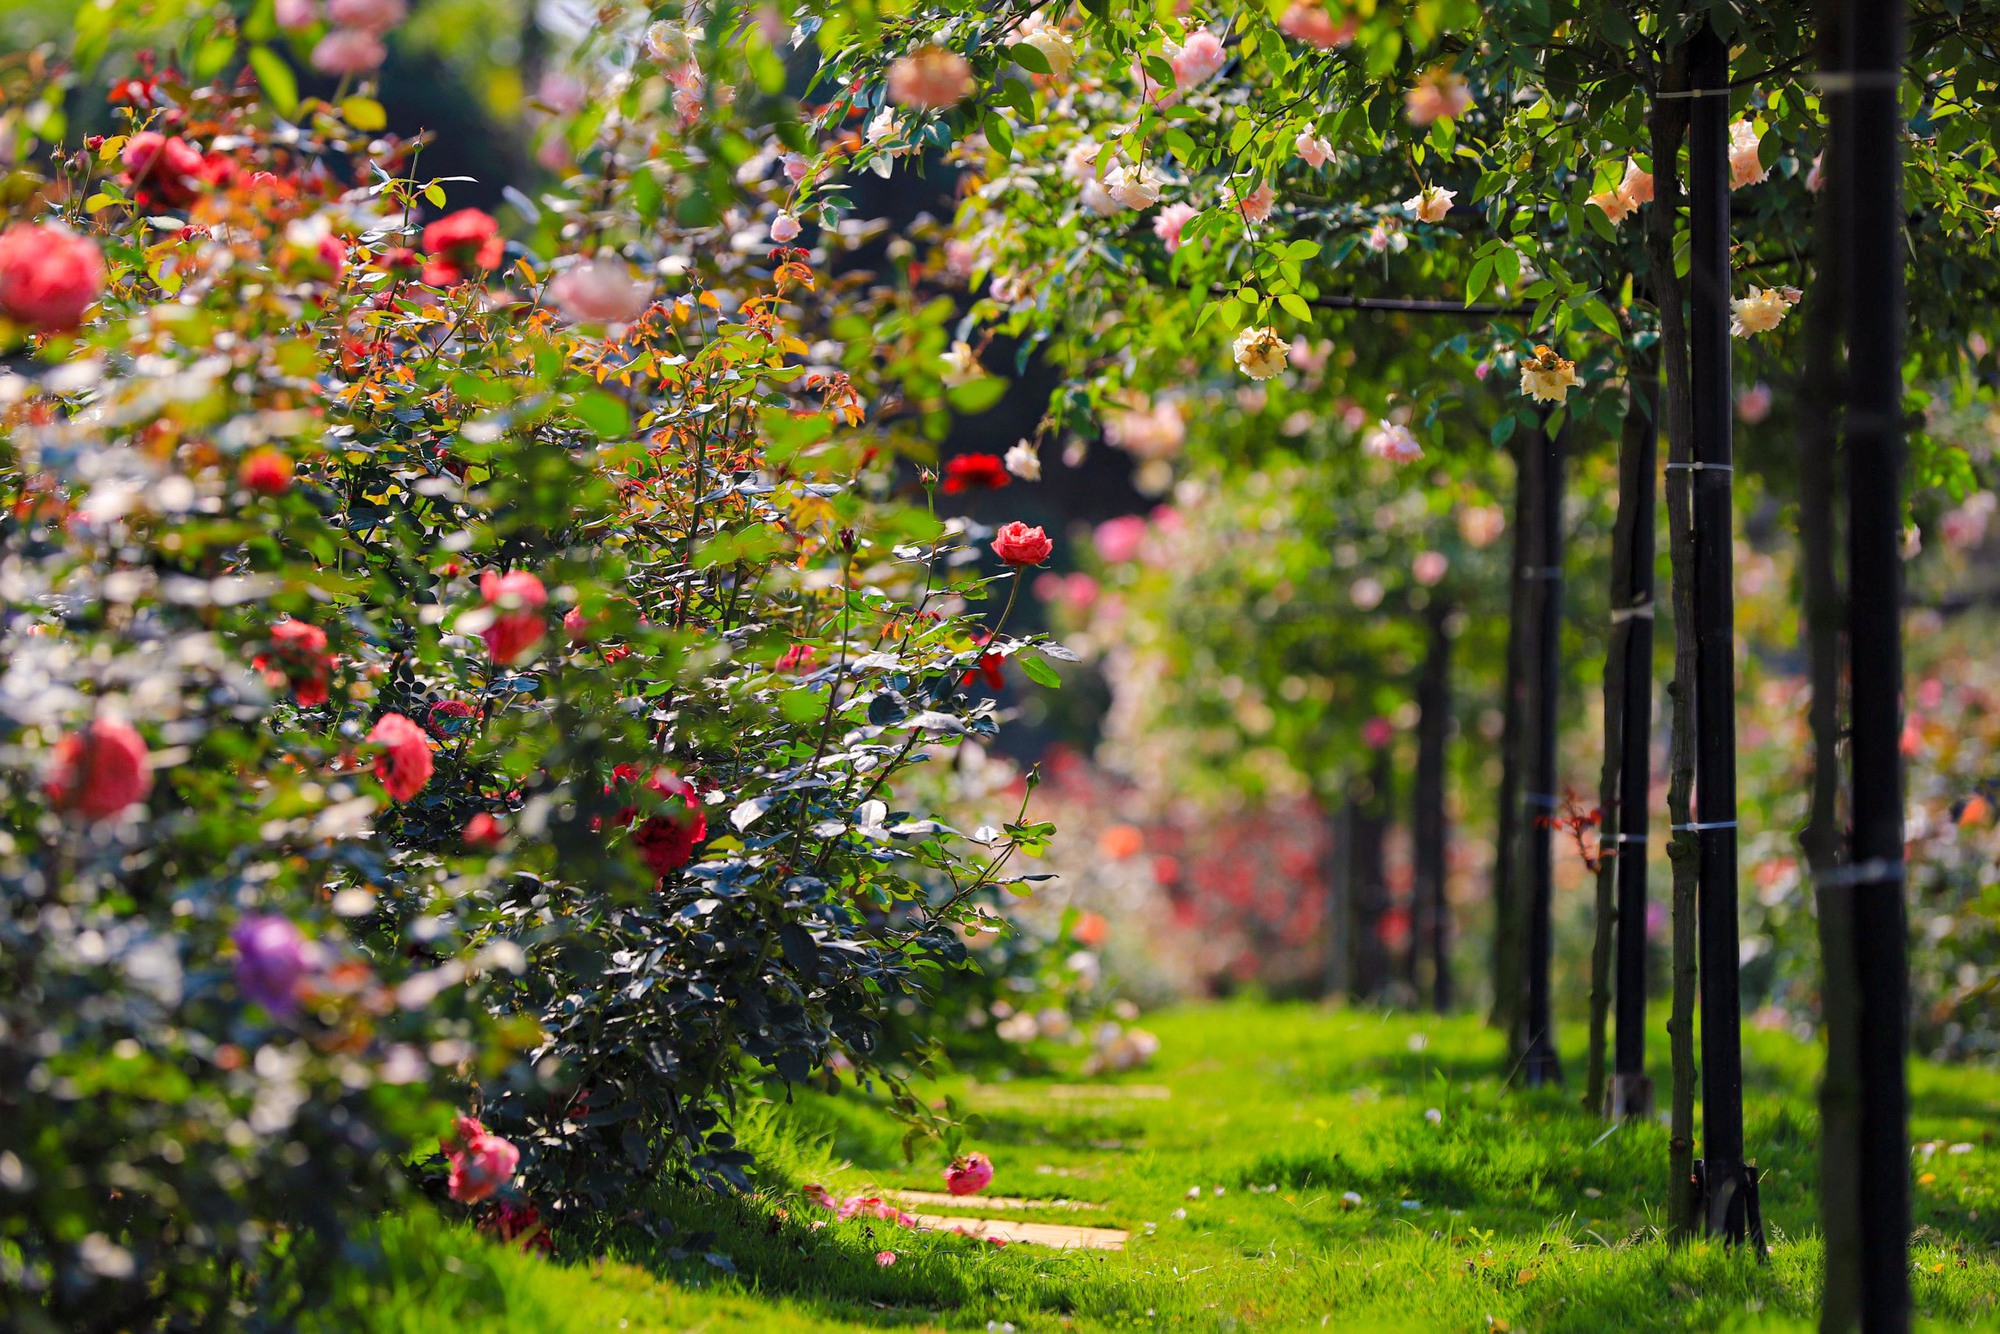 Hình nền Nền Vườn Hồng Hồng Với Một Mặt Trời Ló Dạng ở Giữa Nền, Hoa Hồng  Nở Trong Vườn Hồng, Tên Của Bông Hồng Này Là Nhiếp ảnh Hd Ký ức